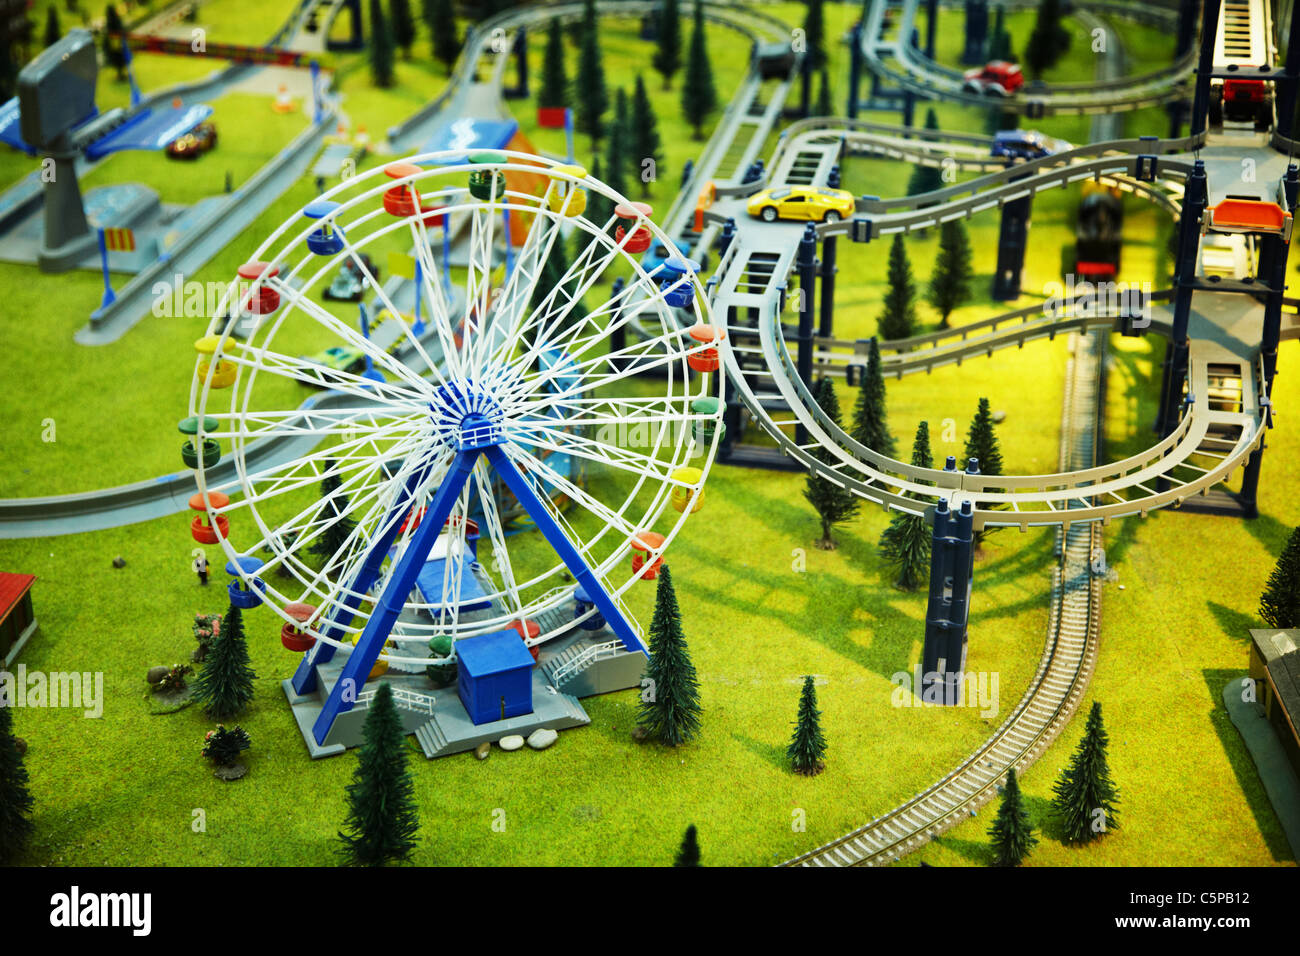 Modèle miniature - un parc avec une grande roue et le chemin de fer Banque D'Images